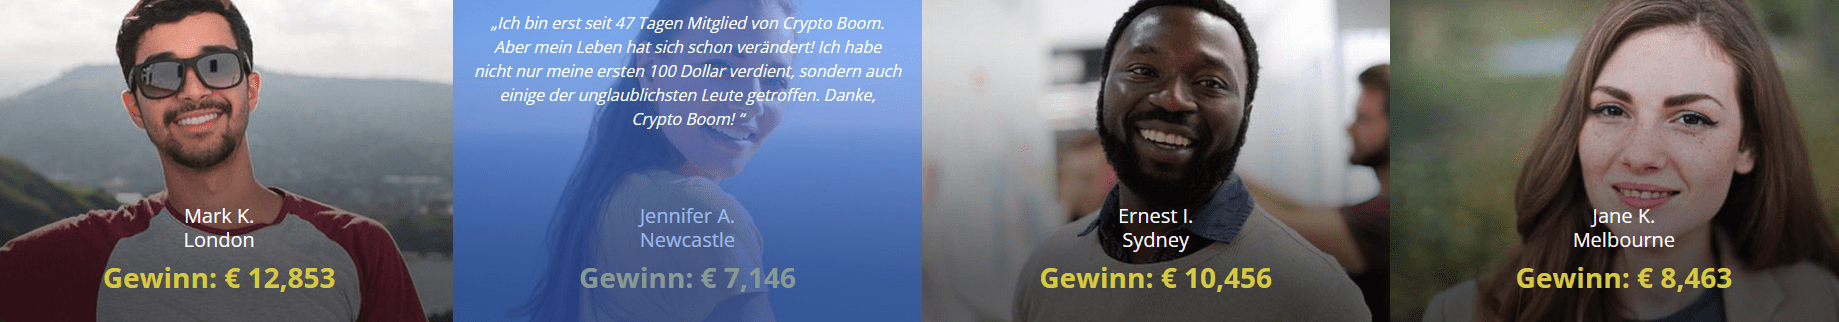 Crypto Boom Erfahrungsberichte